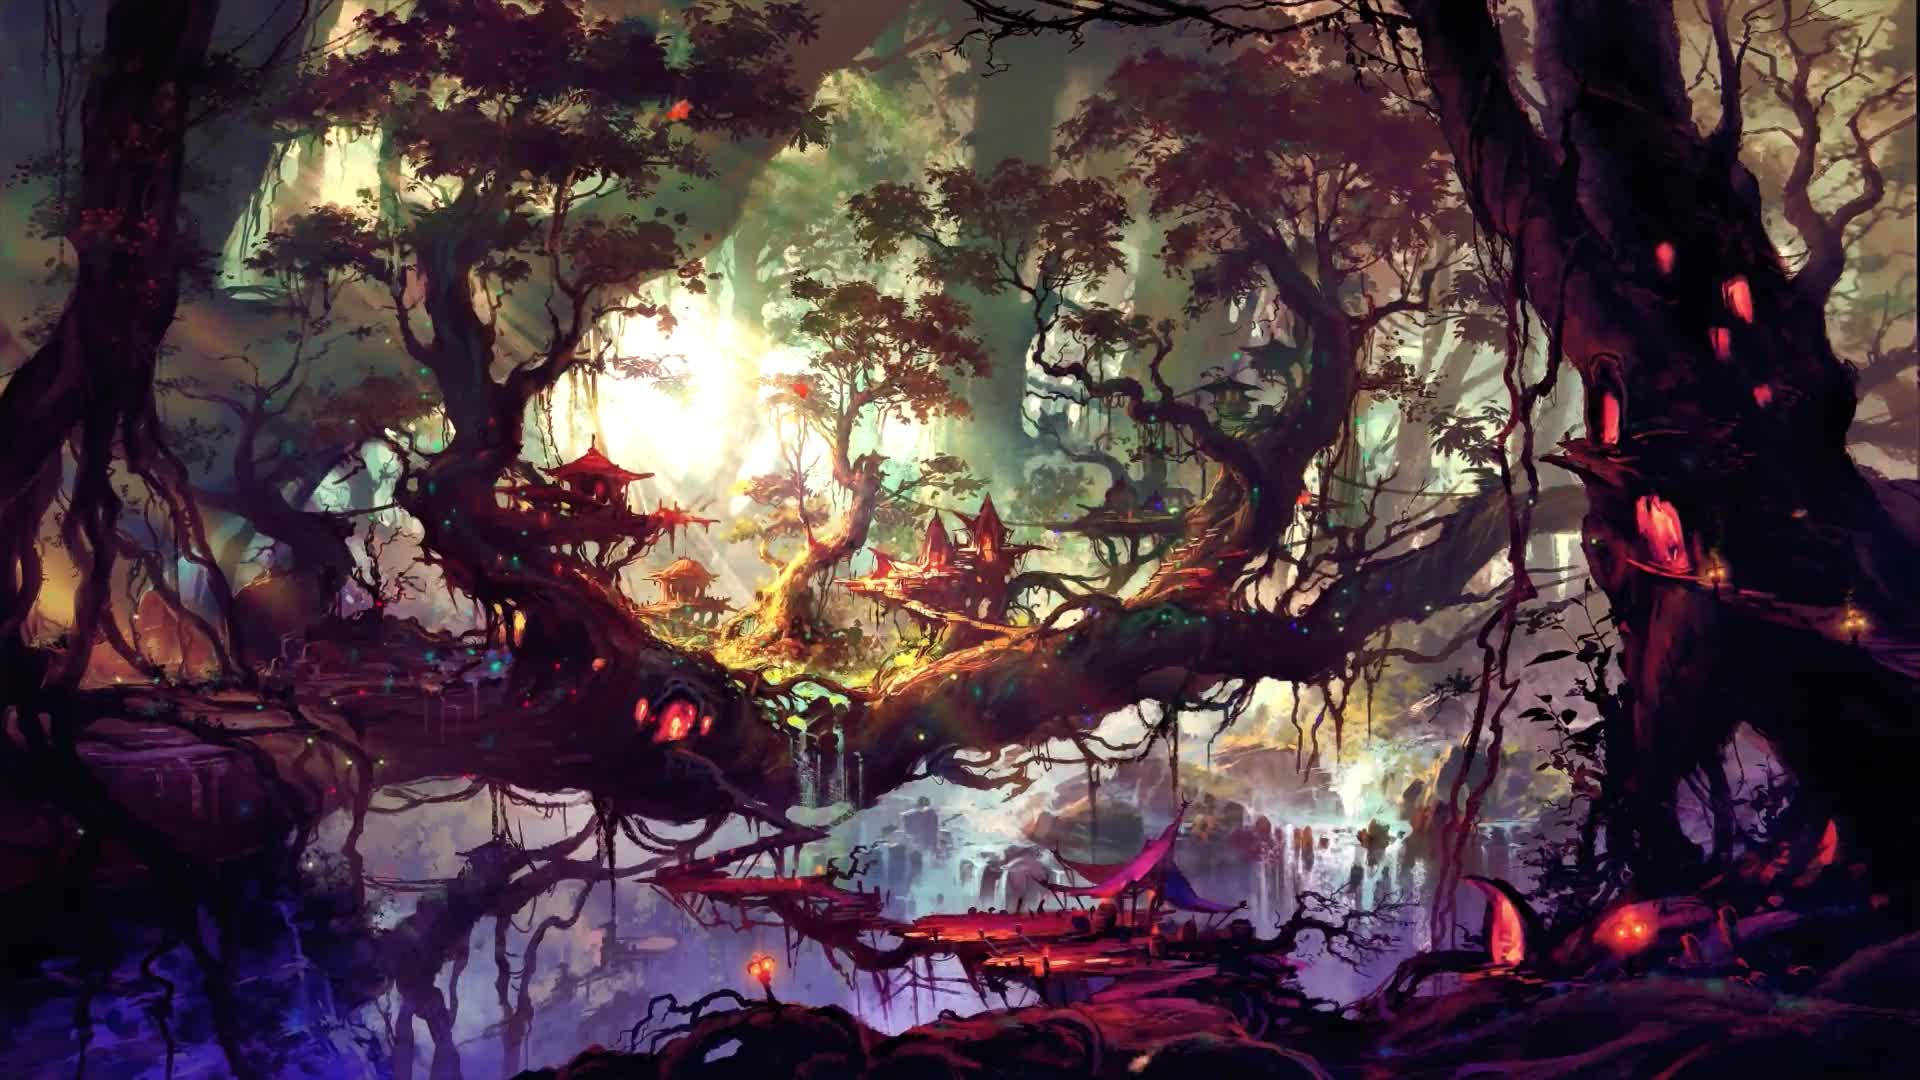 Hình nền rừng thần thoại miễn phí tải về sẽ giúp bạn đưa không gian sống ảo của mình đến một cấp độ hoàn toàn mới. Với những bức ảnh vô cùng bí ẩn và thần bí, bạn sẽ luôn cảm thấy thích thú và tò mò khi ngắm nhìn chúng.